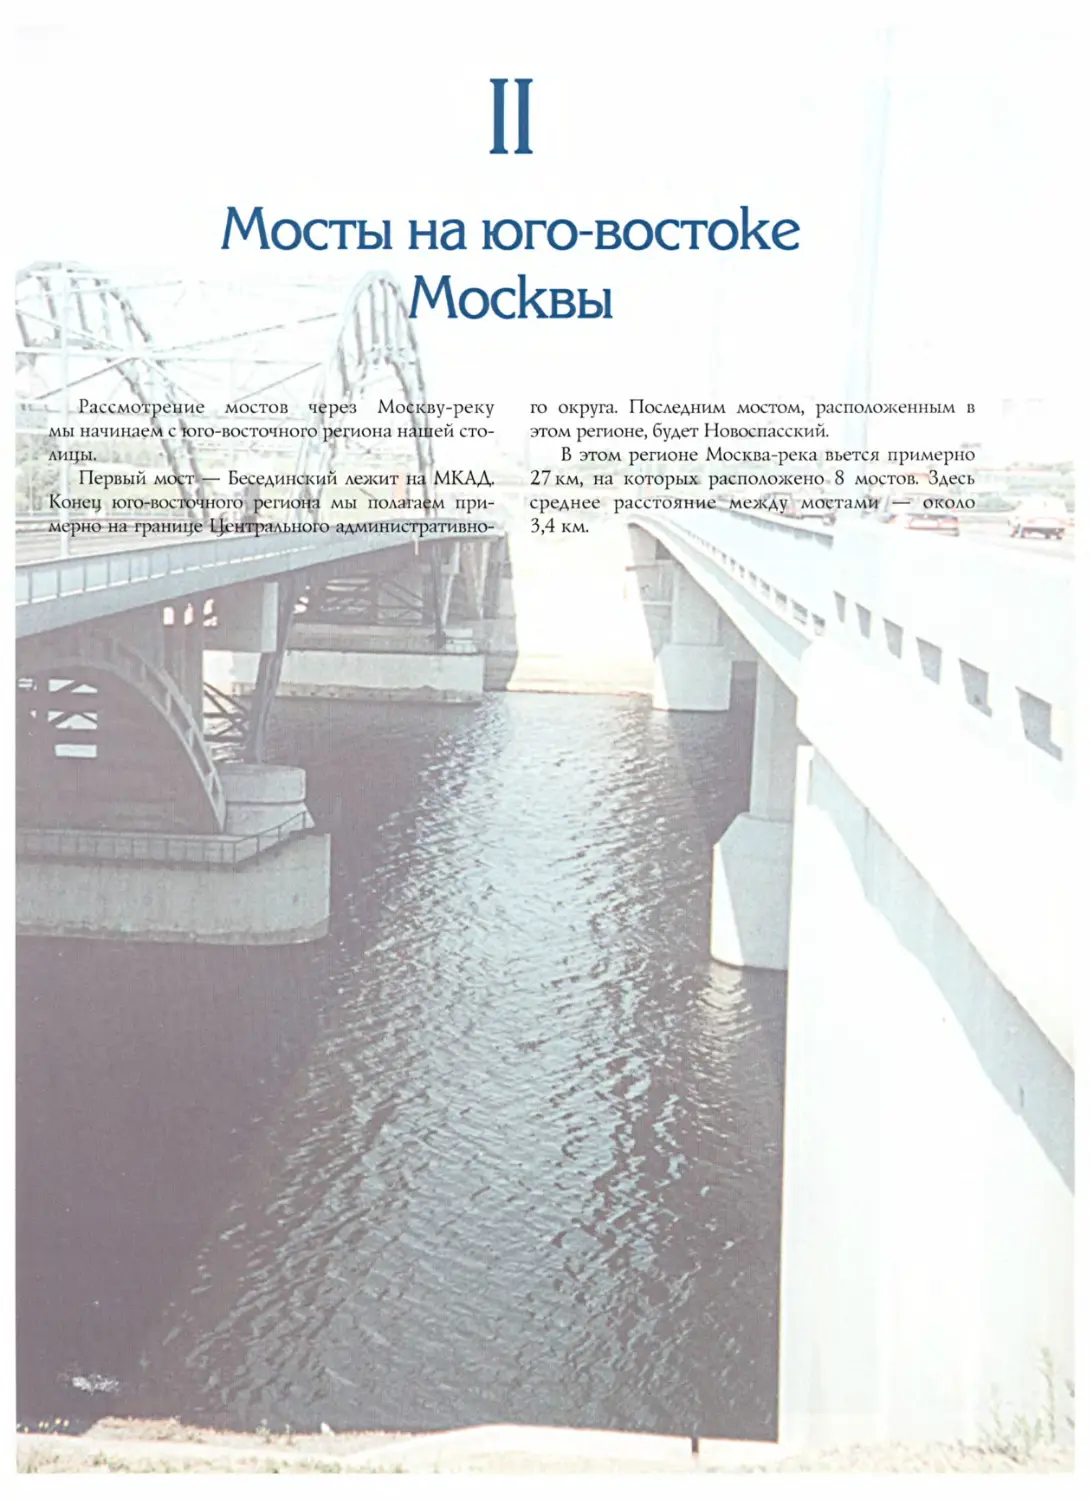 II. Мосты на юго-востоке Москвы